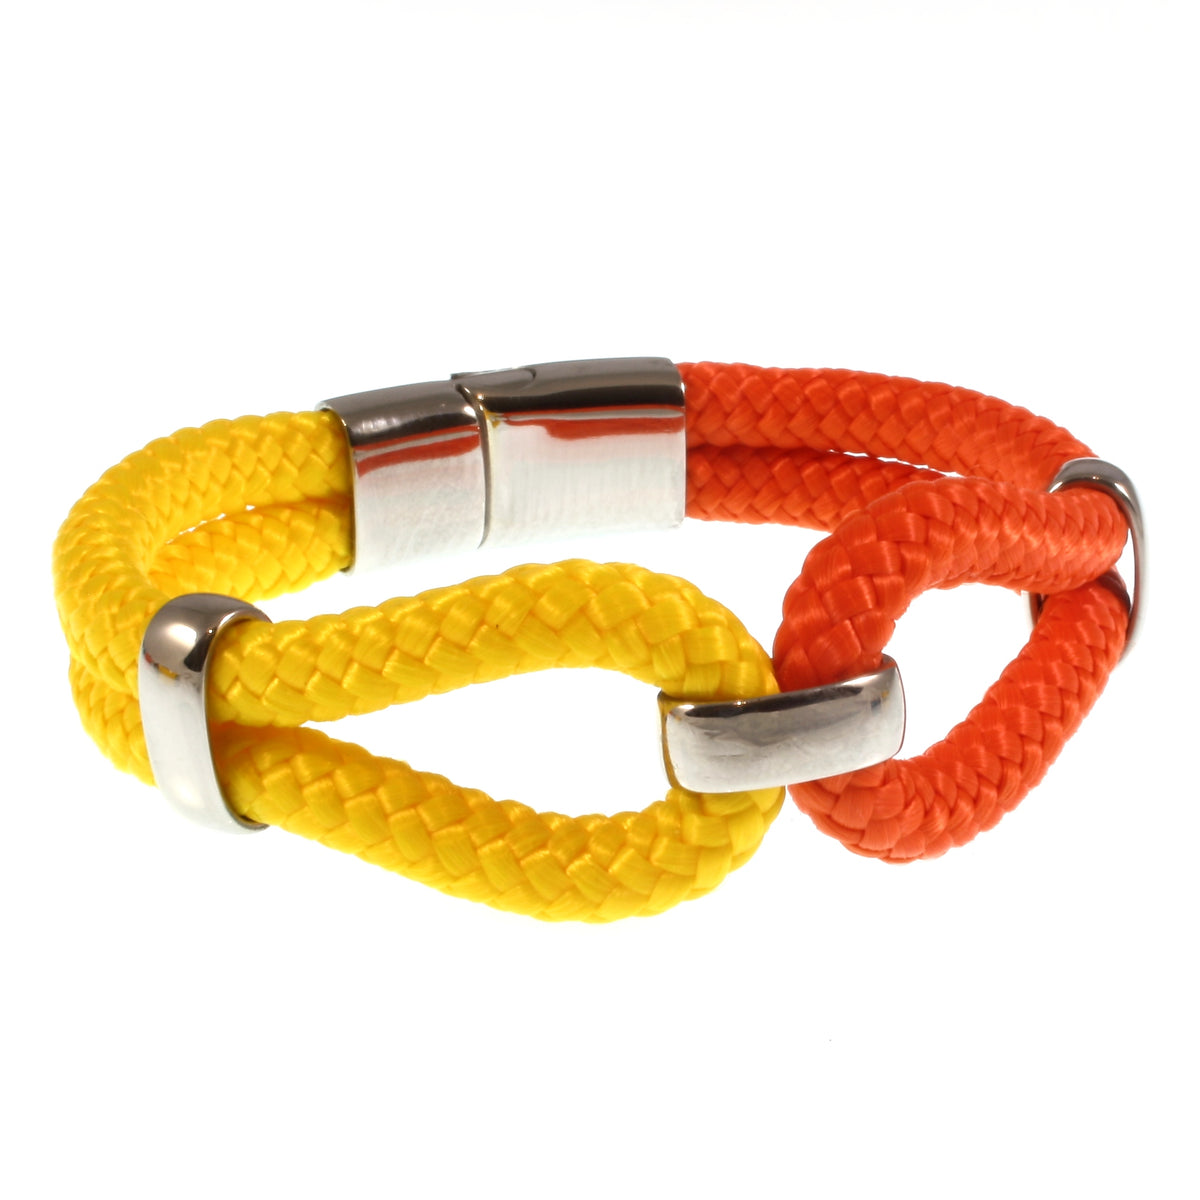 Damen-Segeltau-armband-roma-gelb-orange-geflochten-Edelstahlverschluss-vorn-wavepirate-shop-st